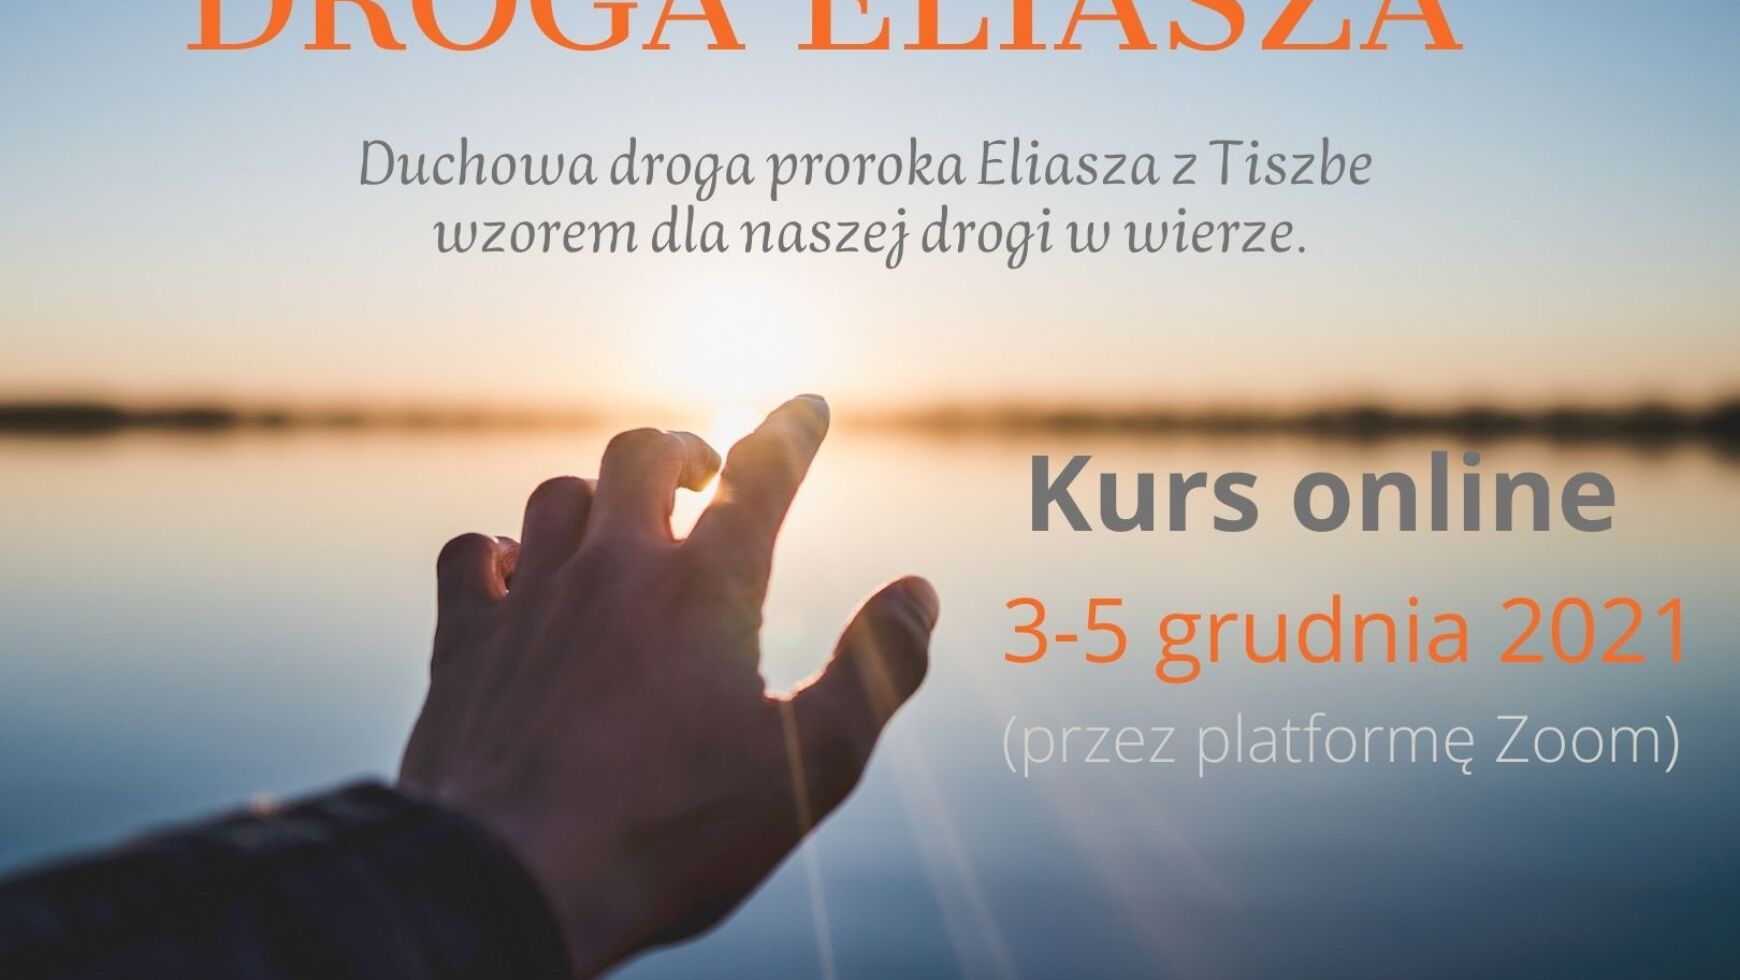 Kurs DROGA ELIASZA, online (zmiana formy)